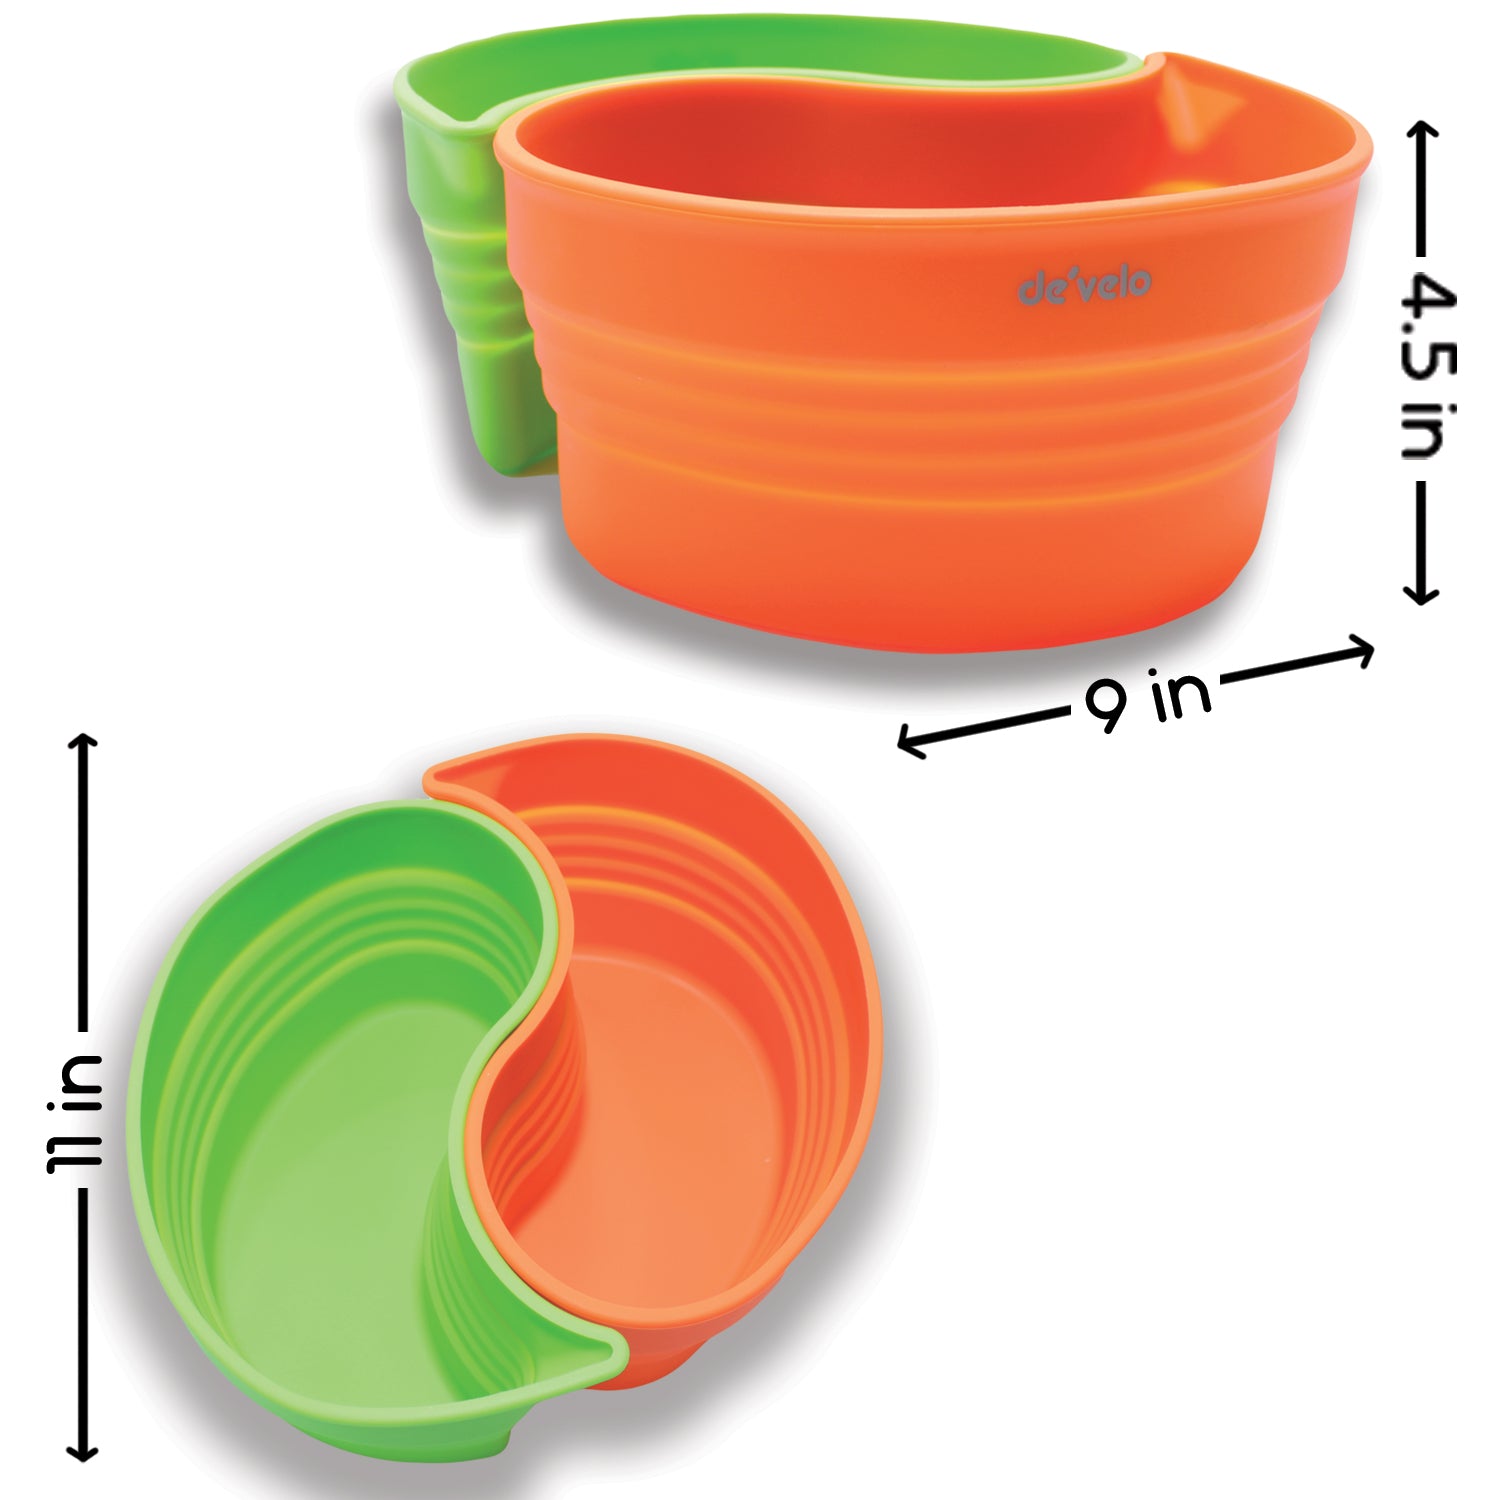 Crock-Pot Insert 2-Piece – Develokitchenware